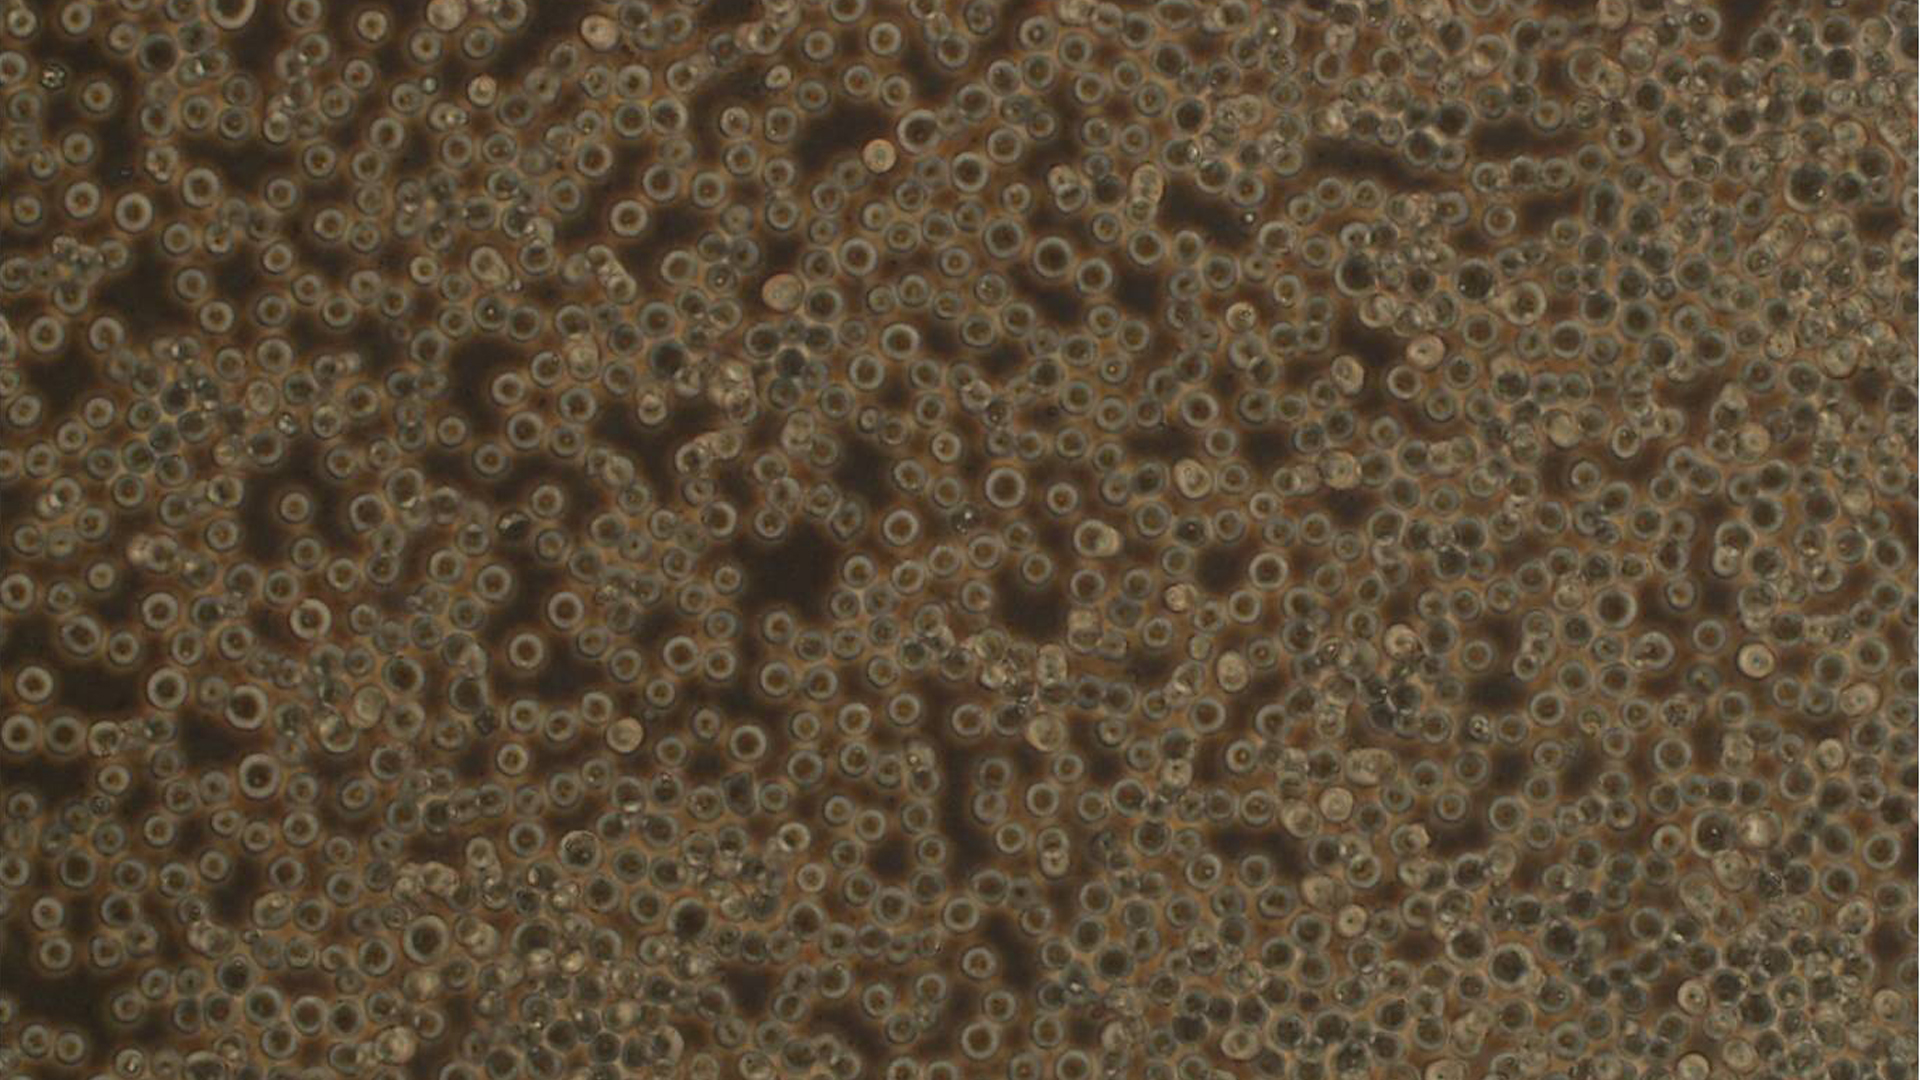 L1210小鼠淋巴细胞白血病细胞